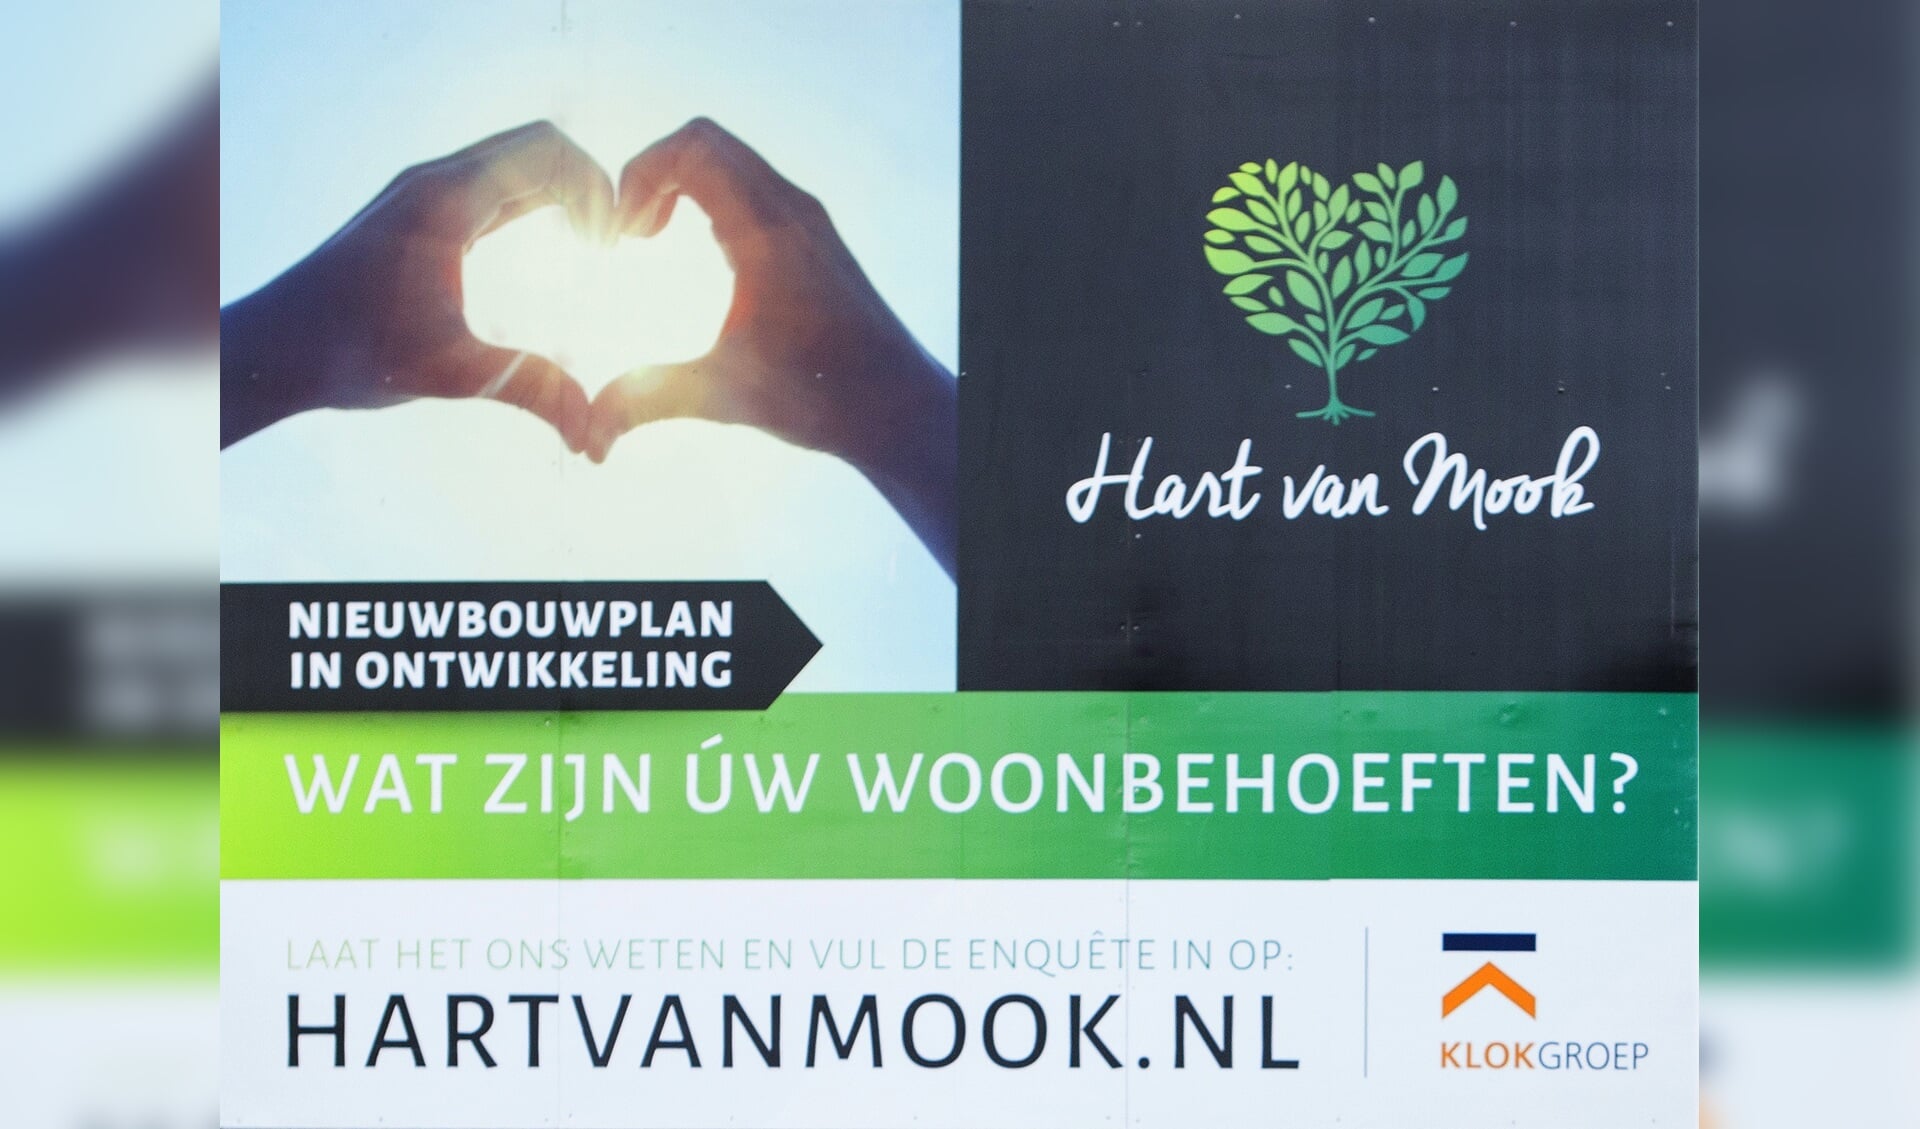 De gemeenteraad buigt zich donderdag 30 maart over 'Hart van Mook'.